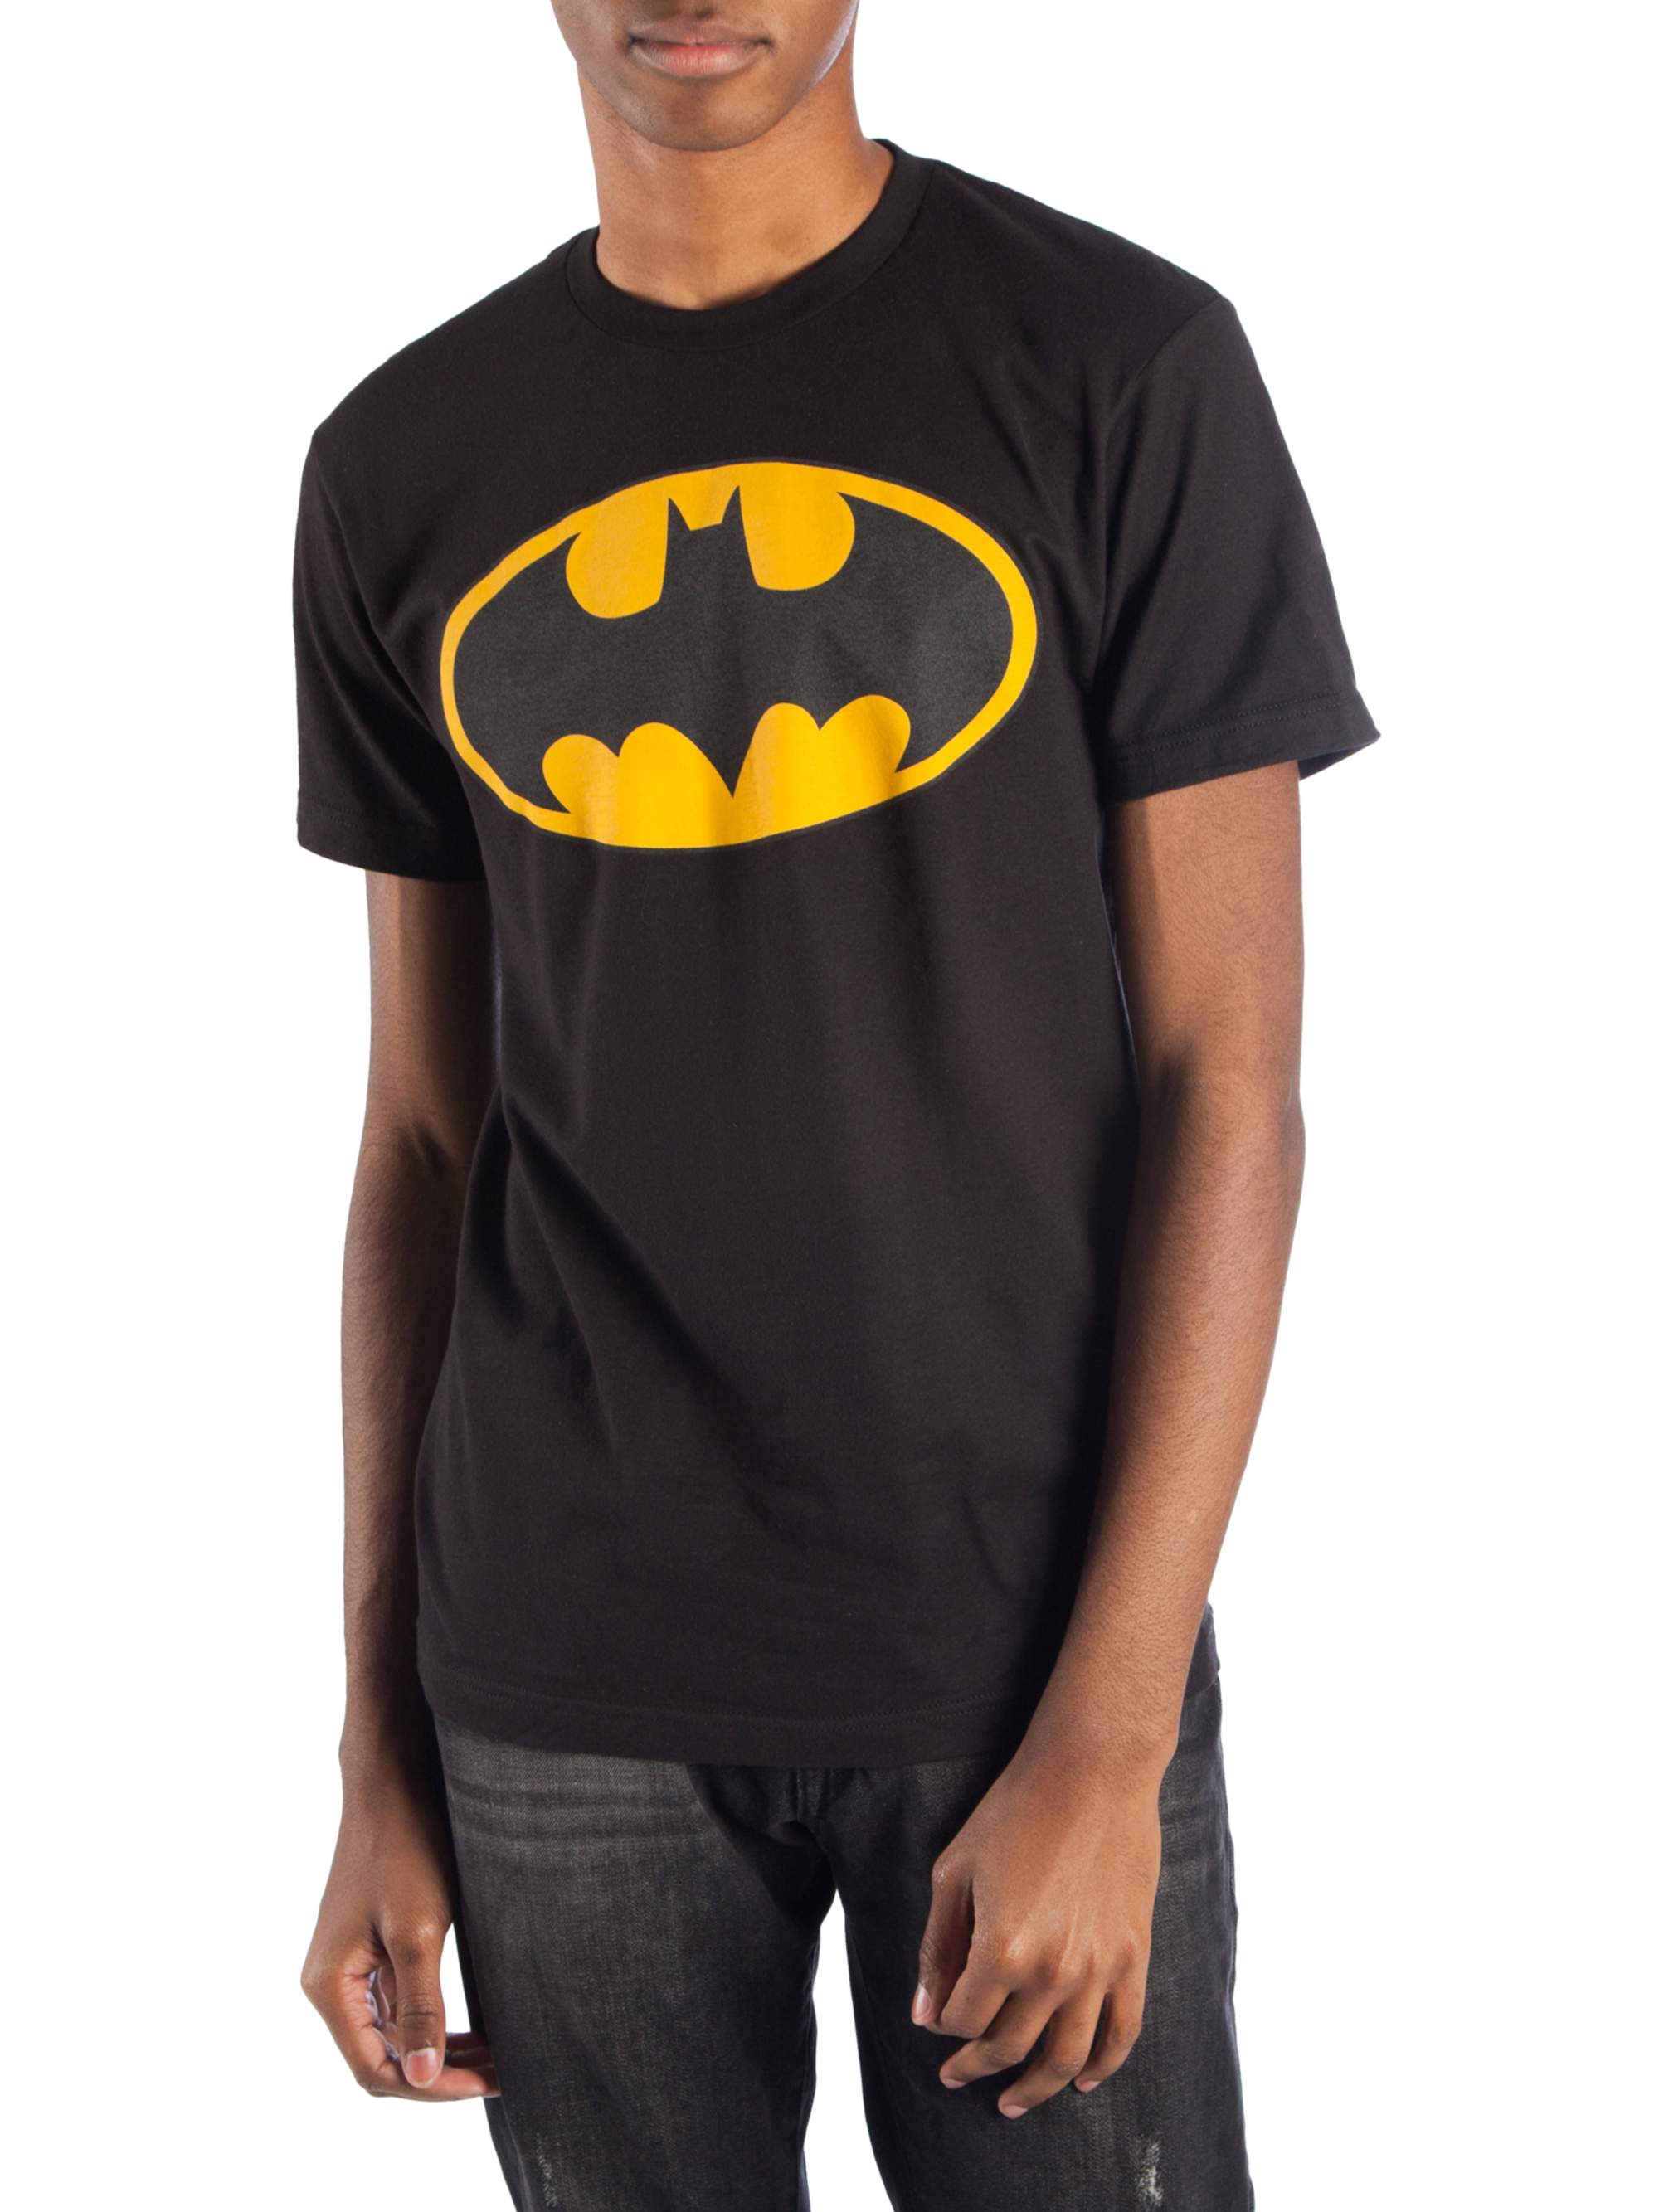 Batman Men's & Big Men's Classic Logo Reflective Graphic Tee, Sizes S-3XL, Batman Mens T-Shirts - image 1 of 1